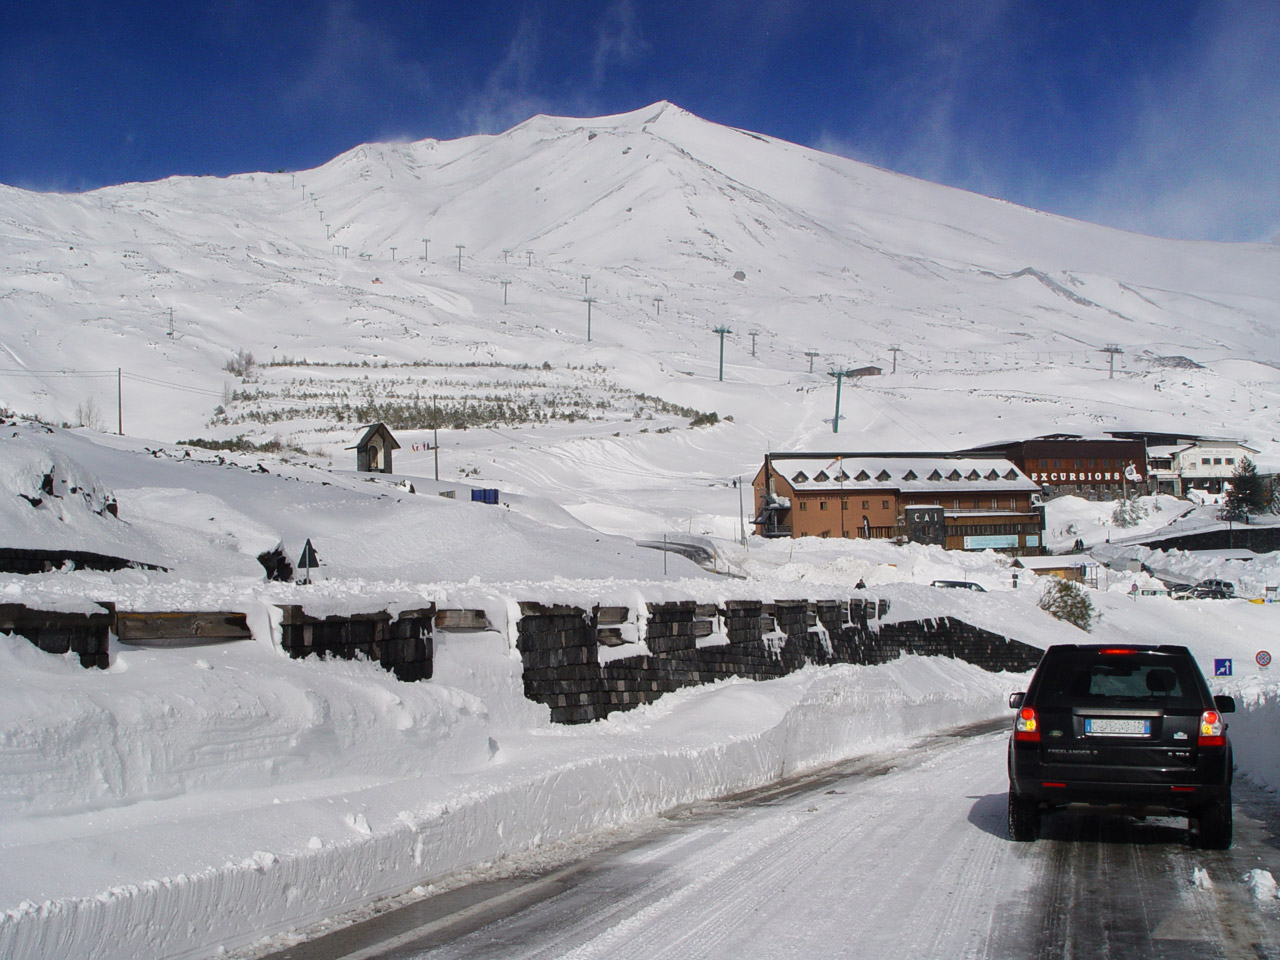 Turisti bloccati dalla neve sull'Etna a -11°$